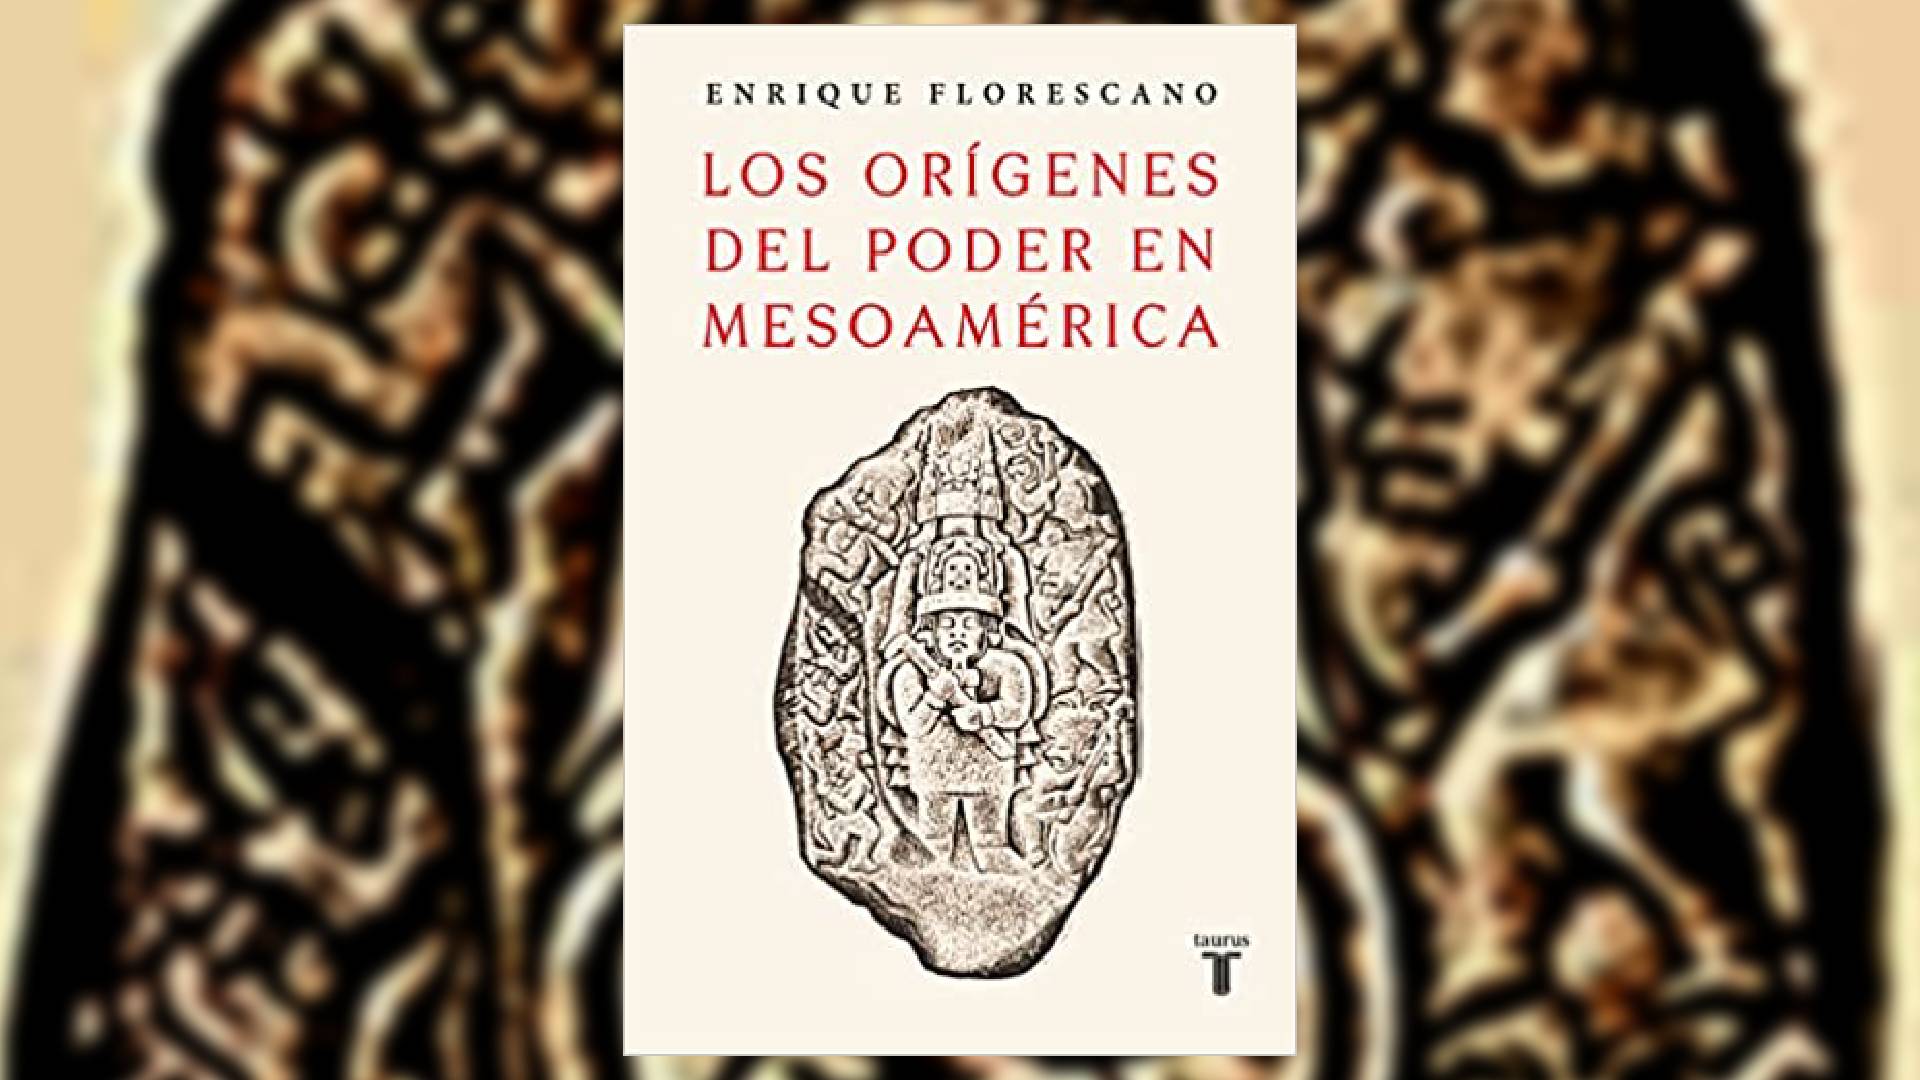 En "Los orígenes del poder en Mesoamérica" el autor narró los mitos y simbolos que poblaron el imaginario mesoamericano.